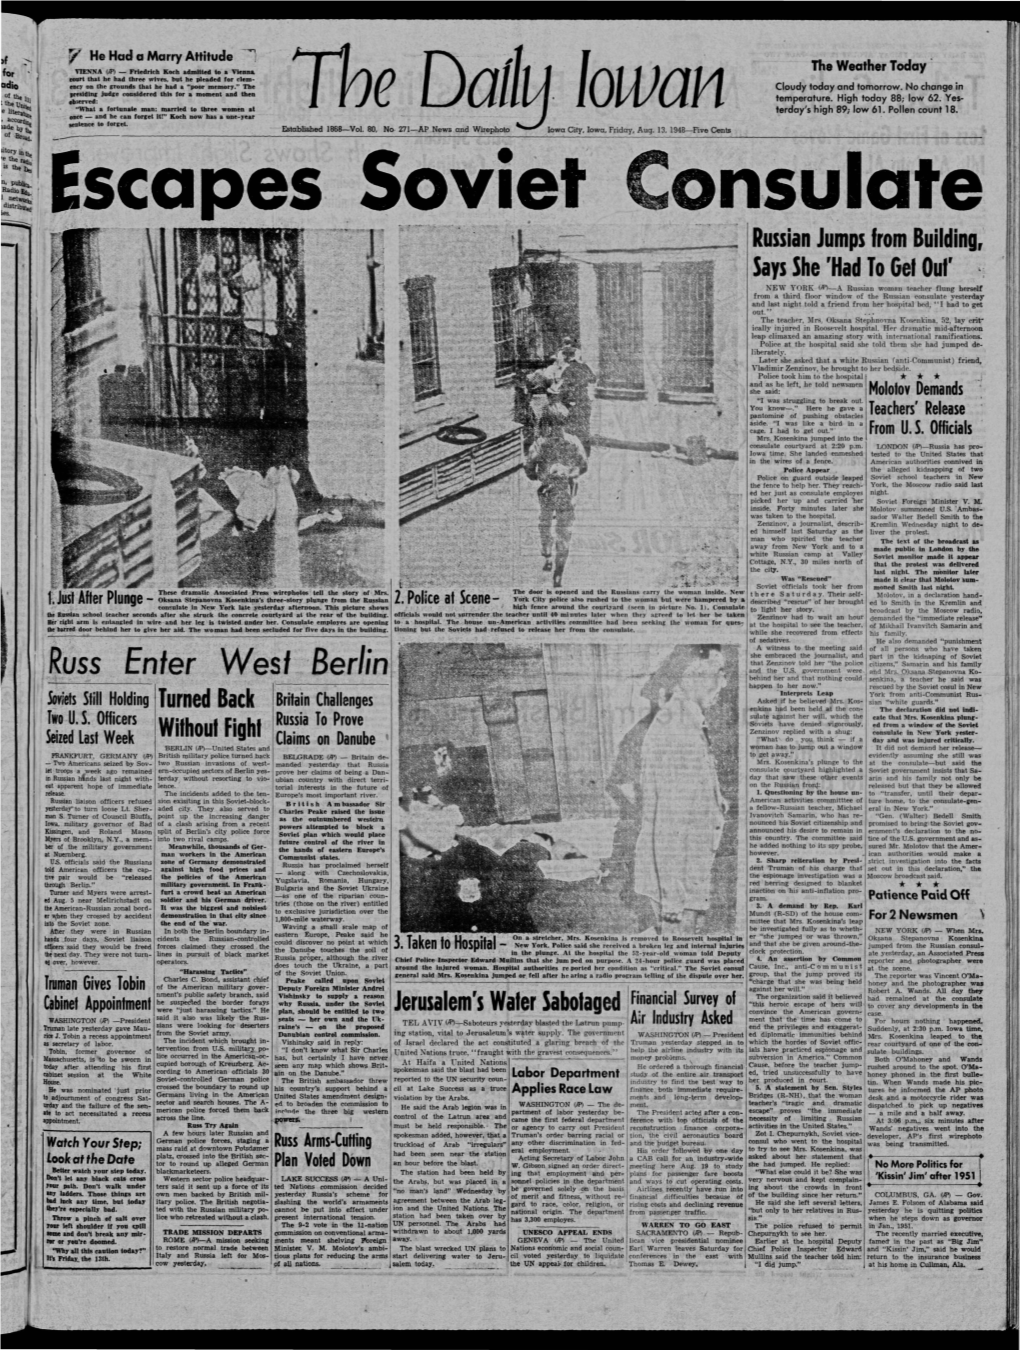 Daily Iowan (Iowa City, Iowa), 1948-08-13